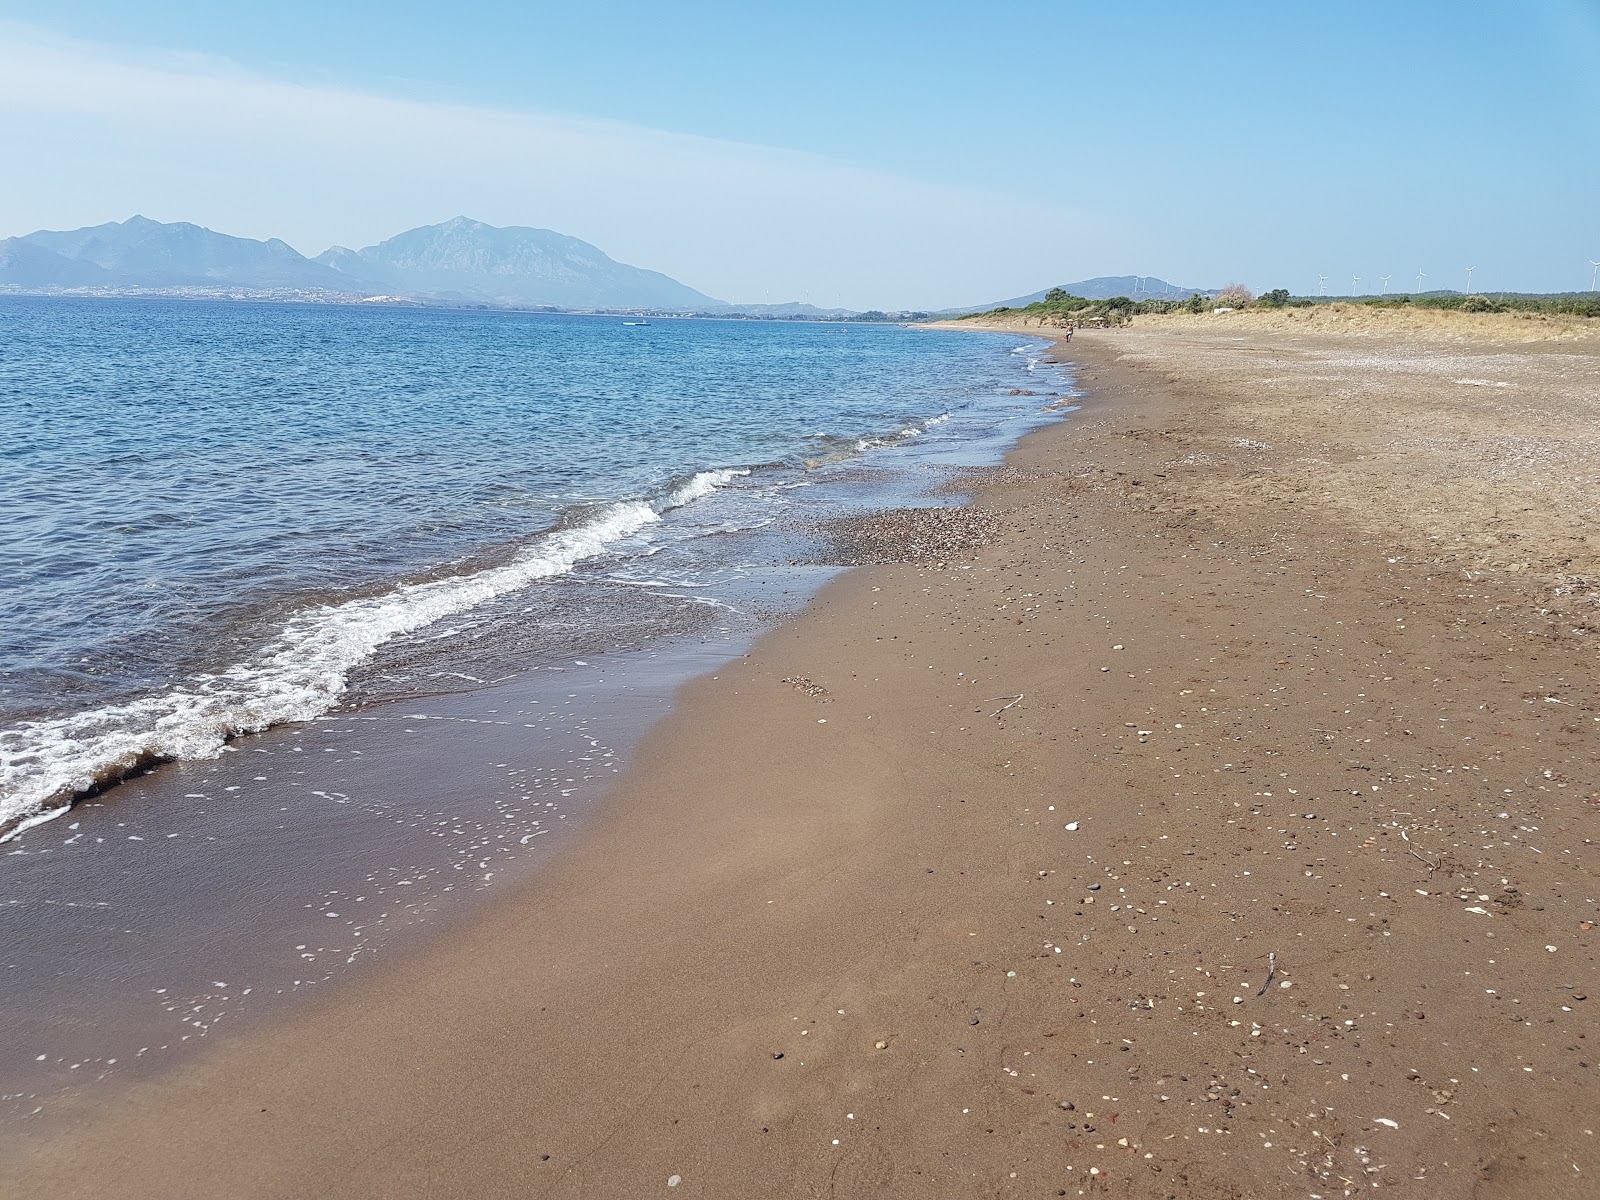 Fotografie cu Perili beach II cu o suprafață de apa pură turcoaz